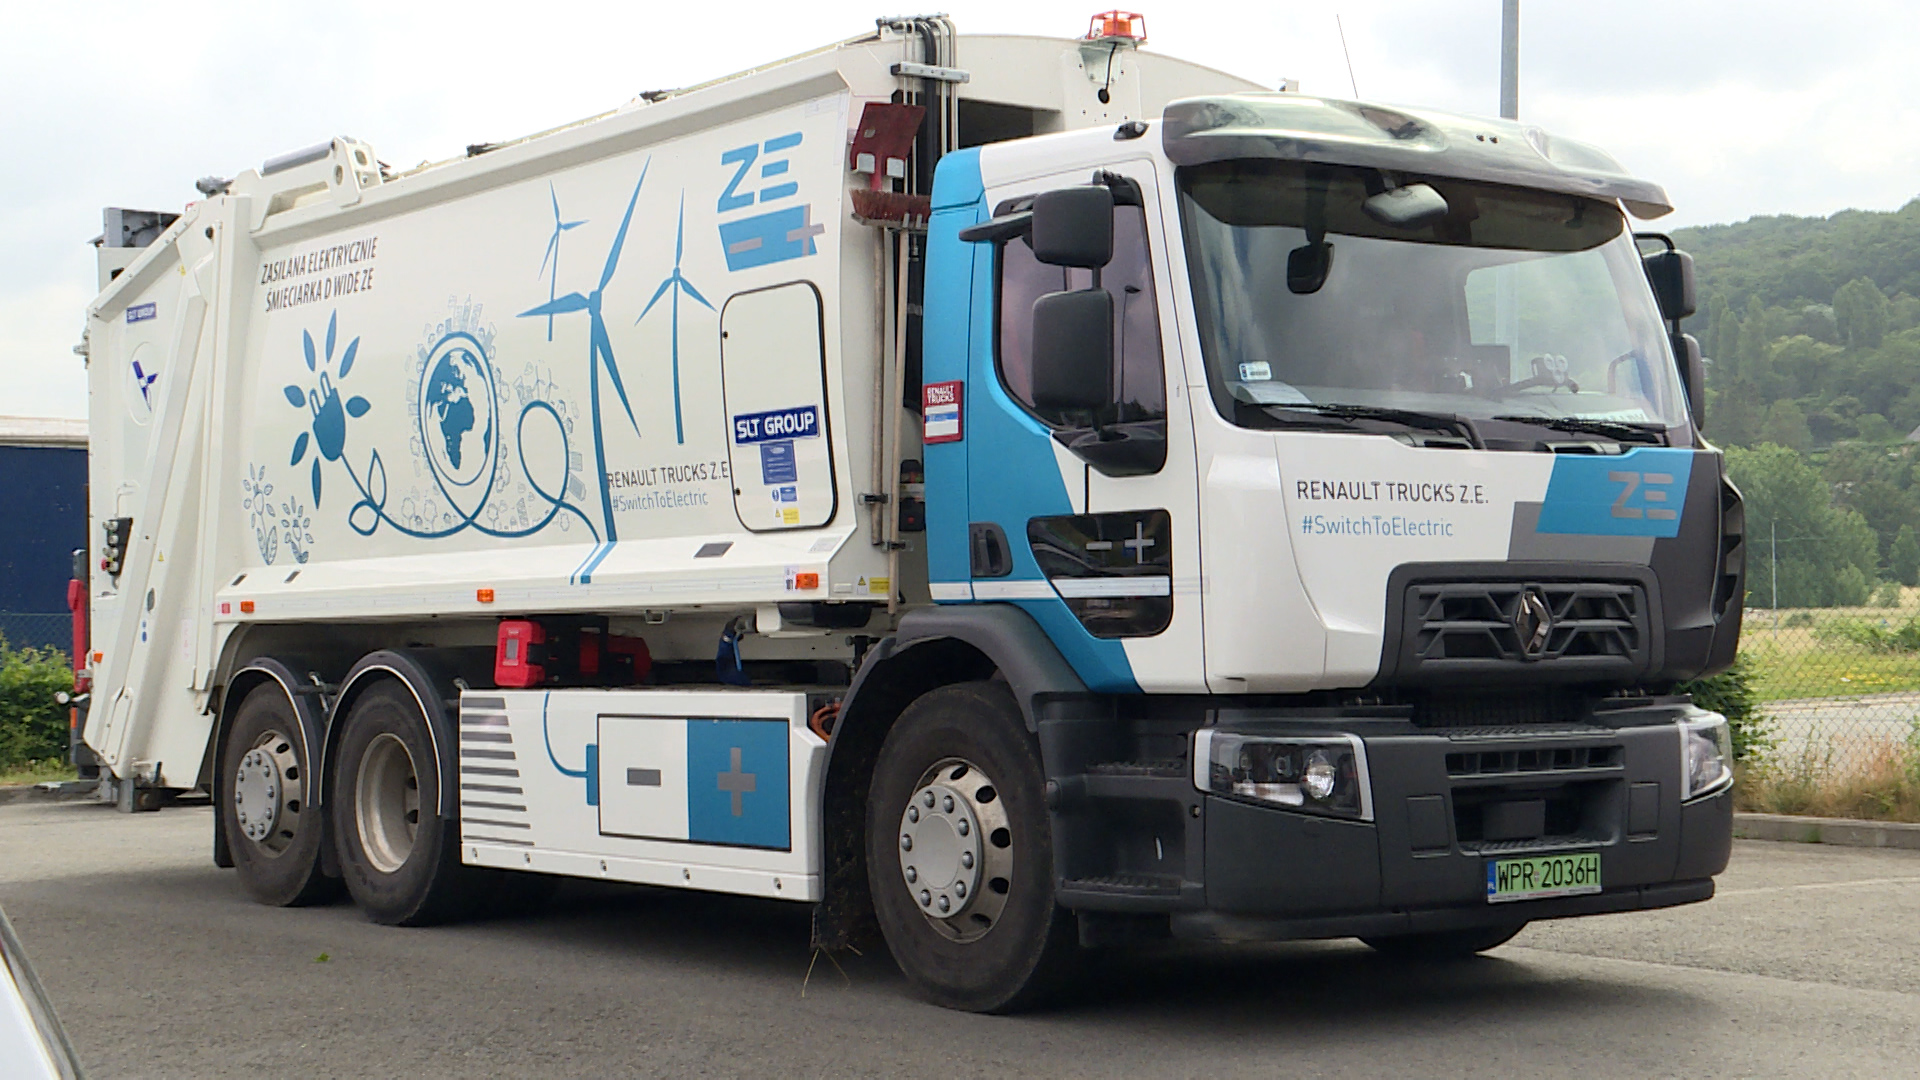 Collecte des déchets : un camion poubelle 100% électrique en test